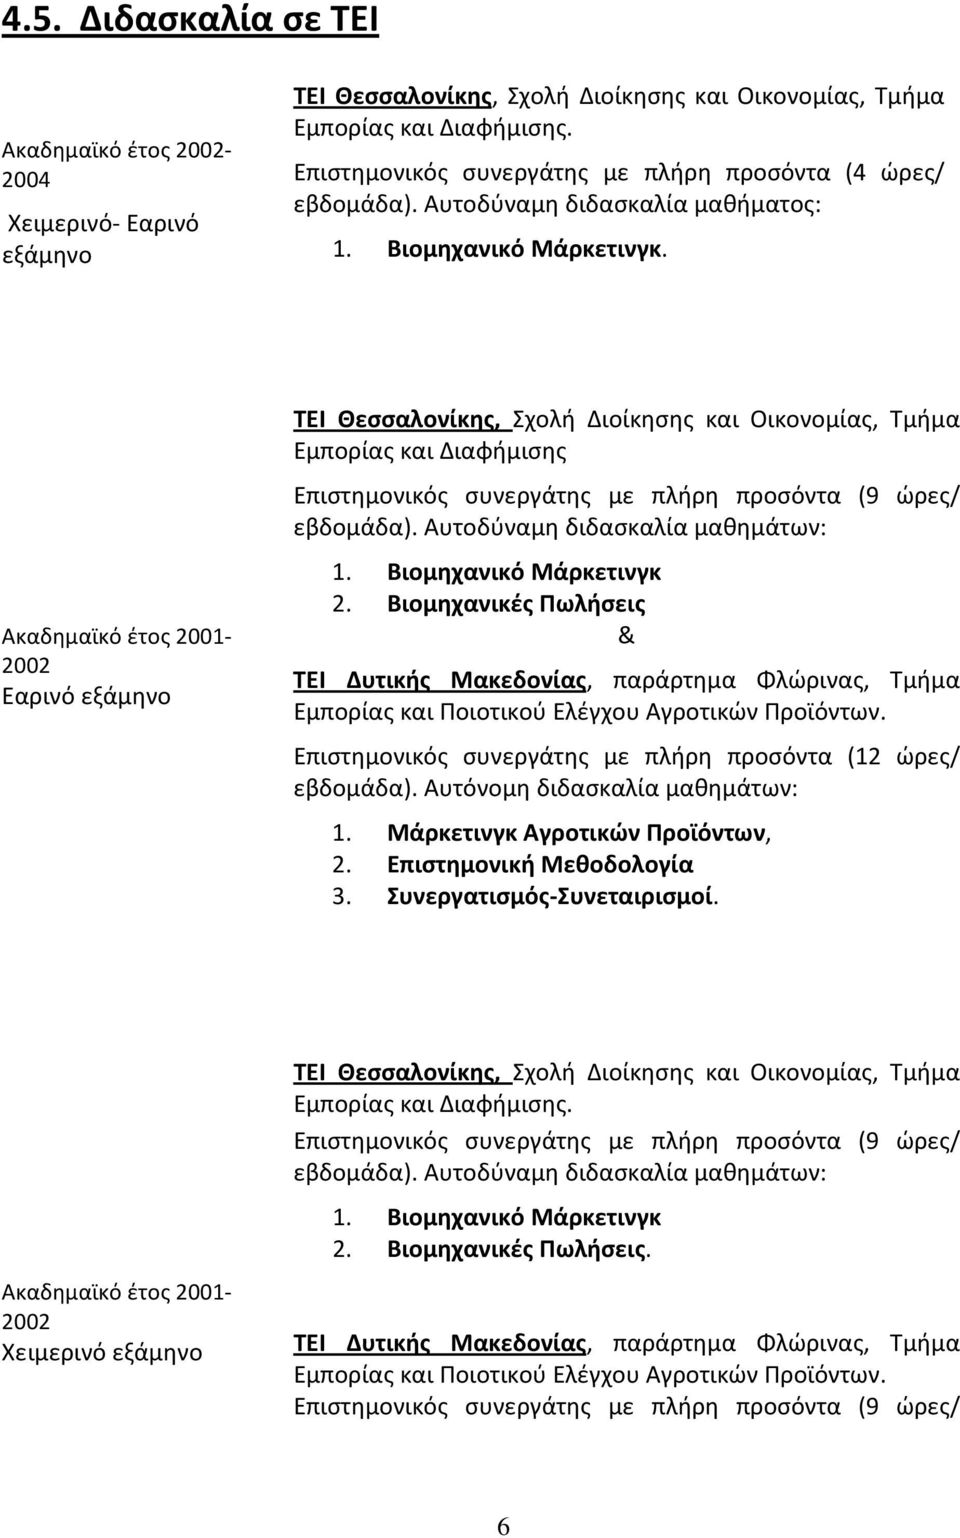 Ακαδημαϊκό έτος 2001-2002 Εαρινό εξάμηνο ΤΕΙ Θεσσαλονίκης, Σχολή Διοίκησης και Οικονομίας, Τμήμα Εμπορίας και Διαφήμισης Επιστημονικός συνεργάτης με πλήρη προσόντα (9 ώρες/ εβδομάδα).